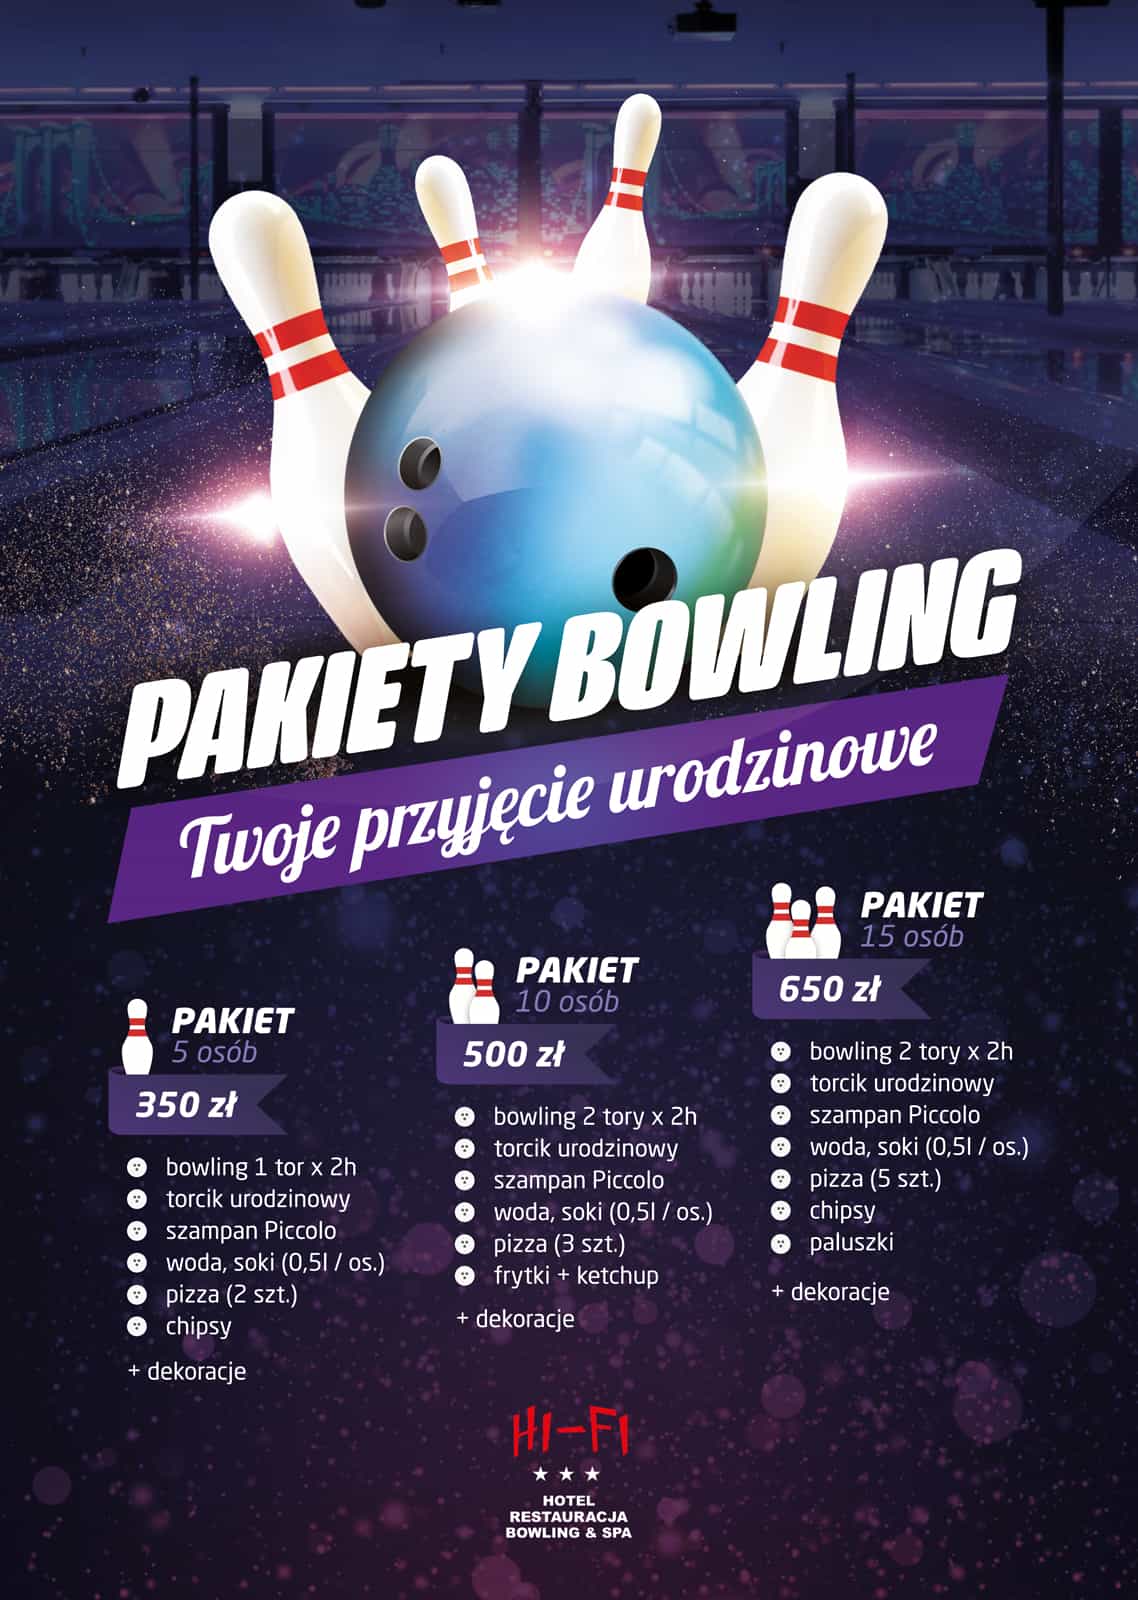 Hifi_pakiety_bowling